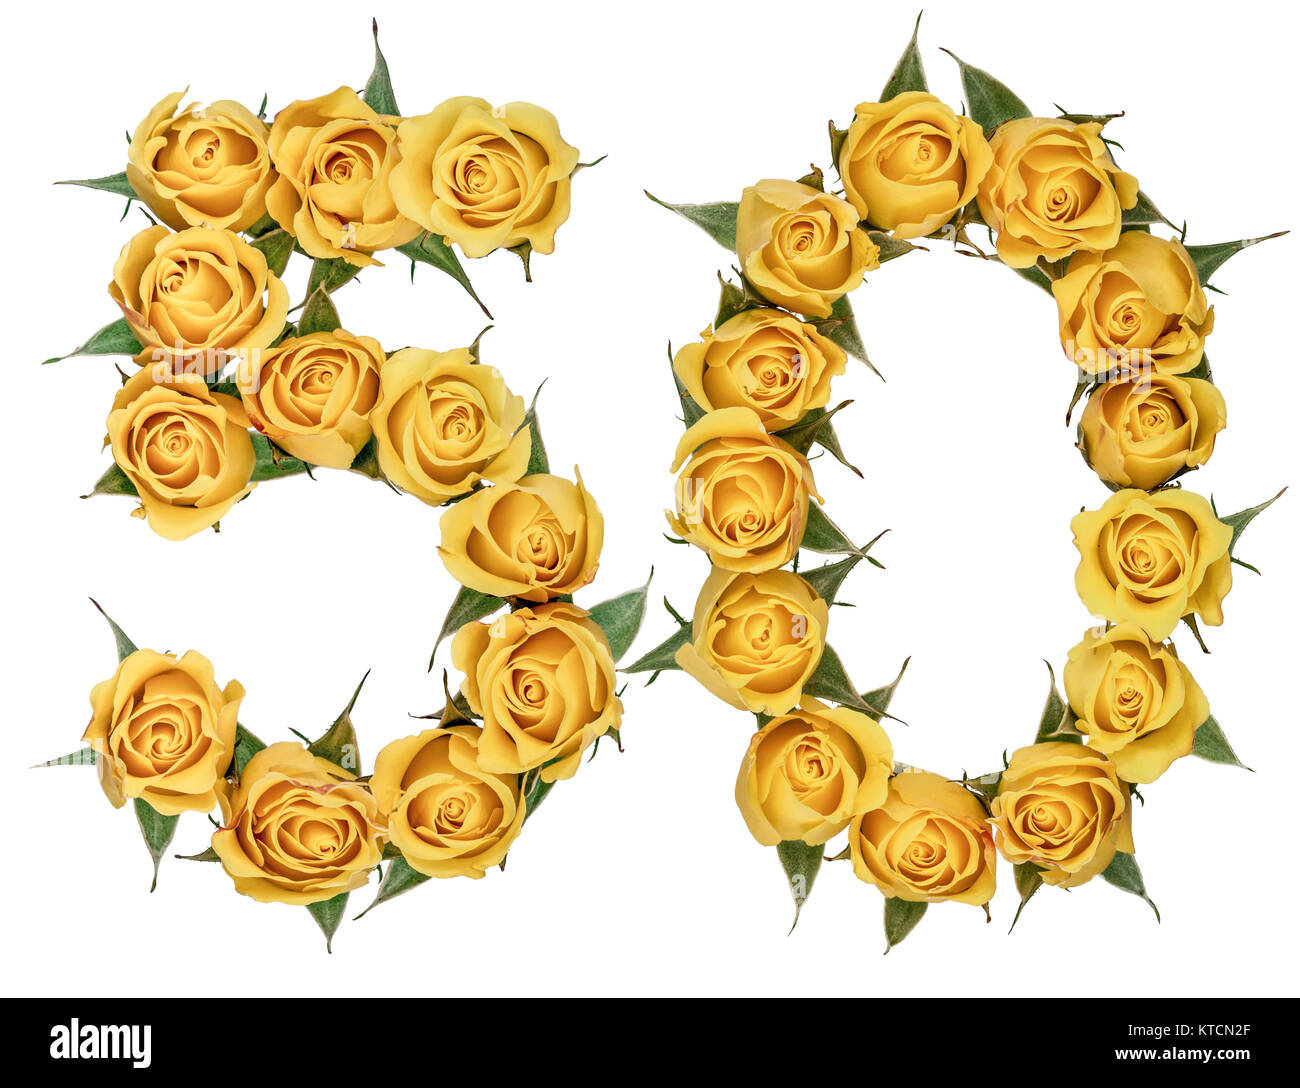 Numero arabo 50, cinquanta, dal giallo dei fiori di rosa, isolati su sfondo bianco Foto Stock